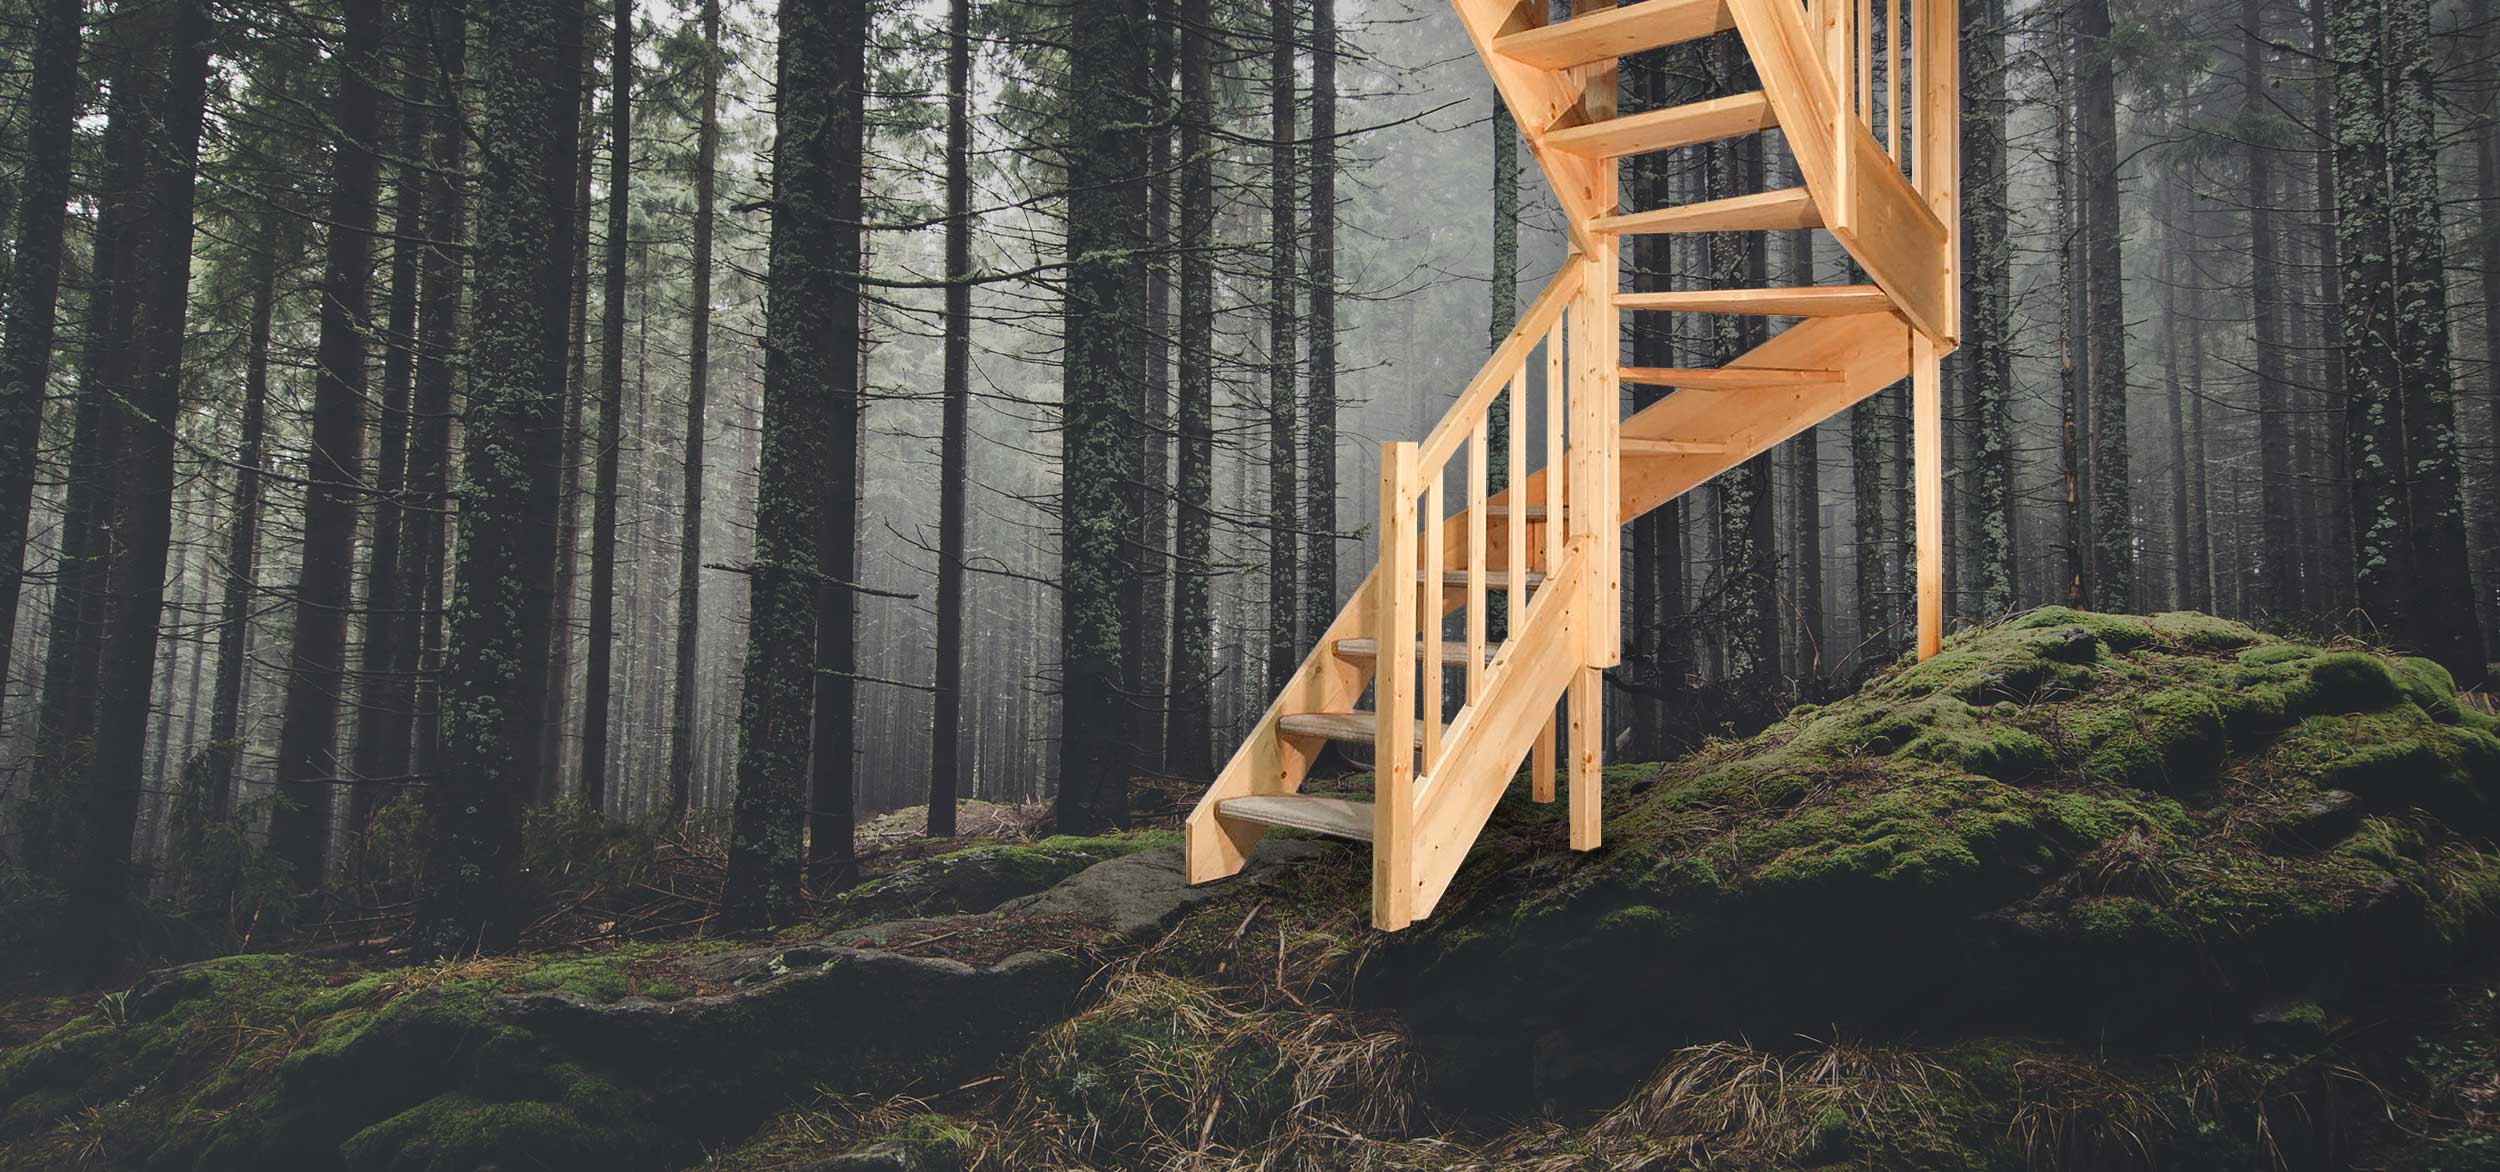 Schody Bystrý image background smrkové schody v lese